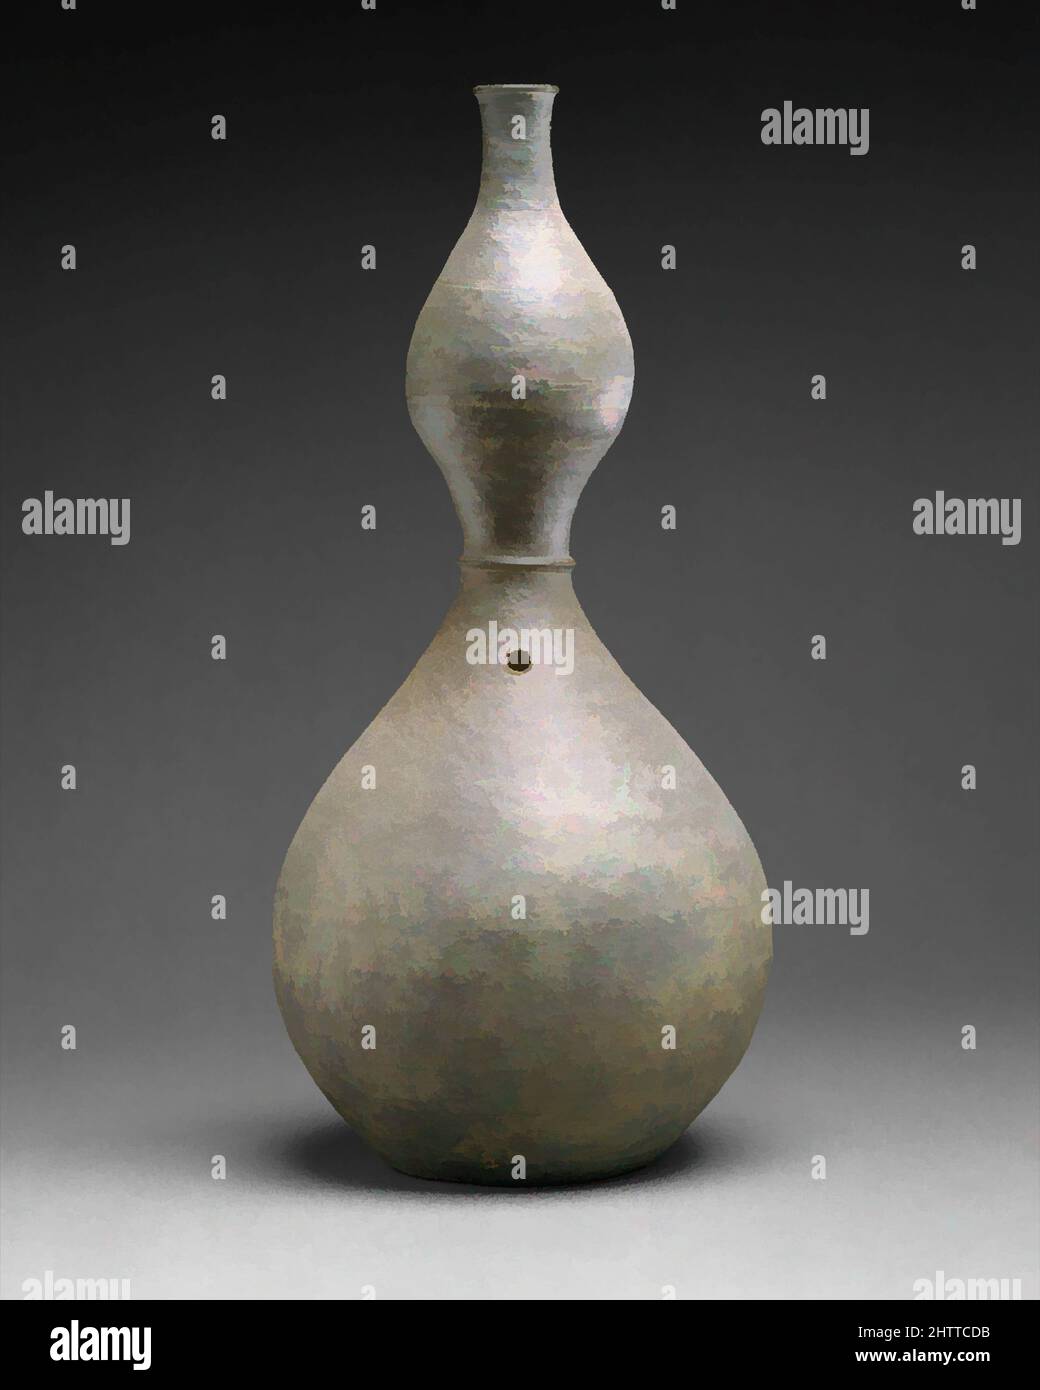 Kunst inspiriert von der Gourd-förmigen Flasche, 표주박 모양 병 고려, Goryeo-Dynastie (918–1392), Anfang des 12.. Jahrhunderts, Korea, Steinzeug mit beiläufiger Ascheglasur, H. 16 3/8 Zoll (41,6 cm), Keramik, Ein anmutiges Beispiel für nicht-Celadon-Steinzeug aus der Goryeo-Zeit, besitzt diese Flasche erfreulich, klassische Werke, die von Artotop mit einem Schuss Moderne modernisiert wurden. Formen, Farbe und Wert, auffällige visuelle Wirkung auf Kunst. Emotionen durch Freiheit von Kunstwerken auf zeitgemäße Weise. Eine zeitlose Botschaft, die eine wild kreative neue Richtung verfolgt. Künstler, die sich dem digitalen Medium zuwenden und die Artotop NFT erschaffen Stockfoto